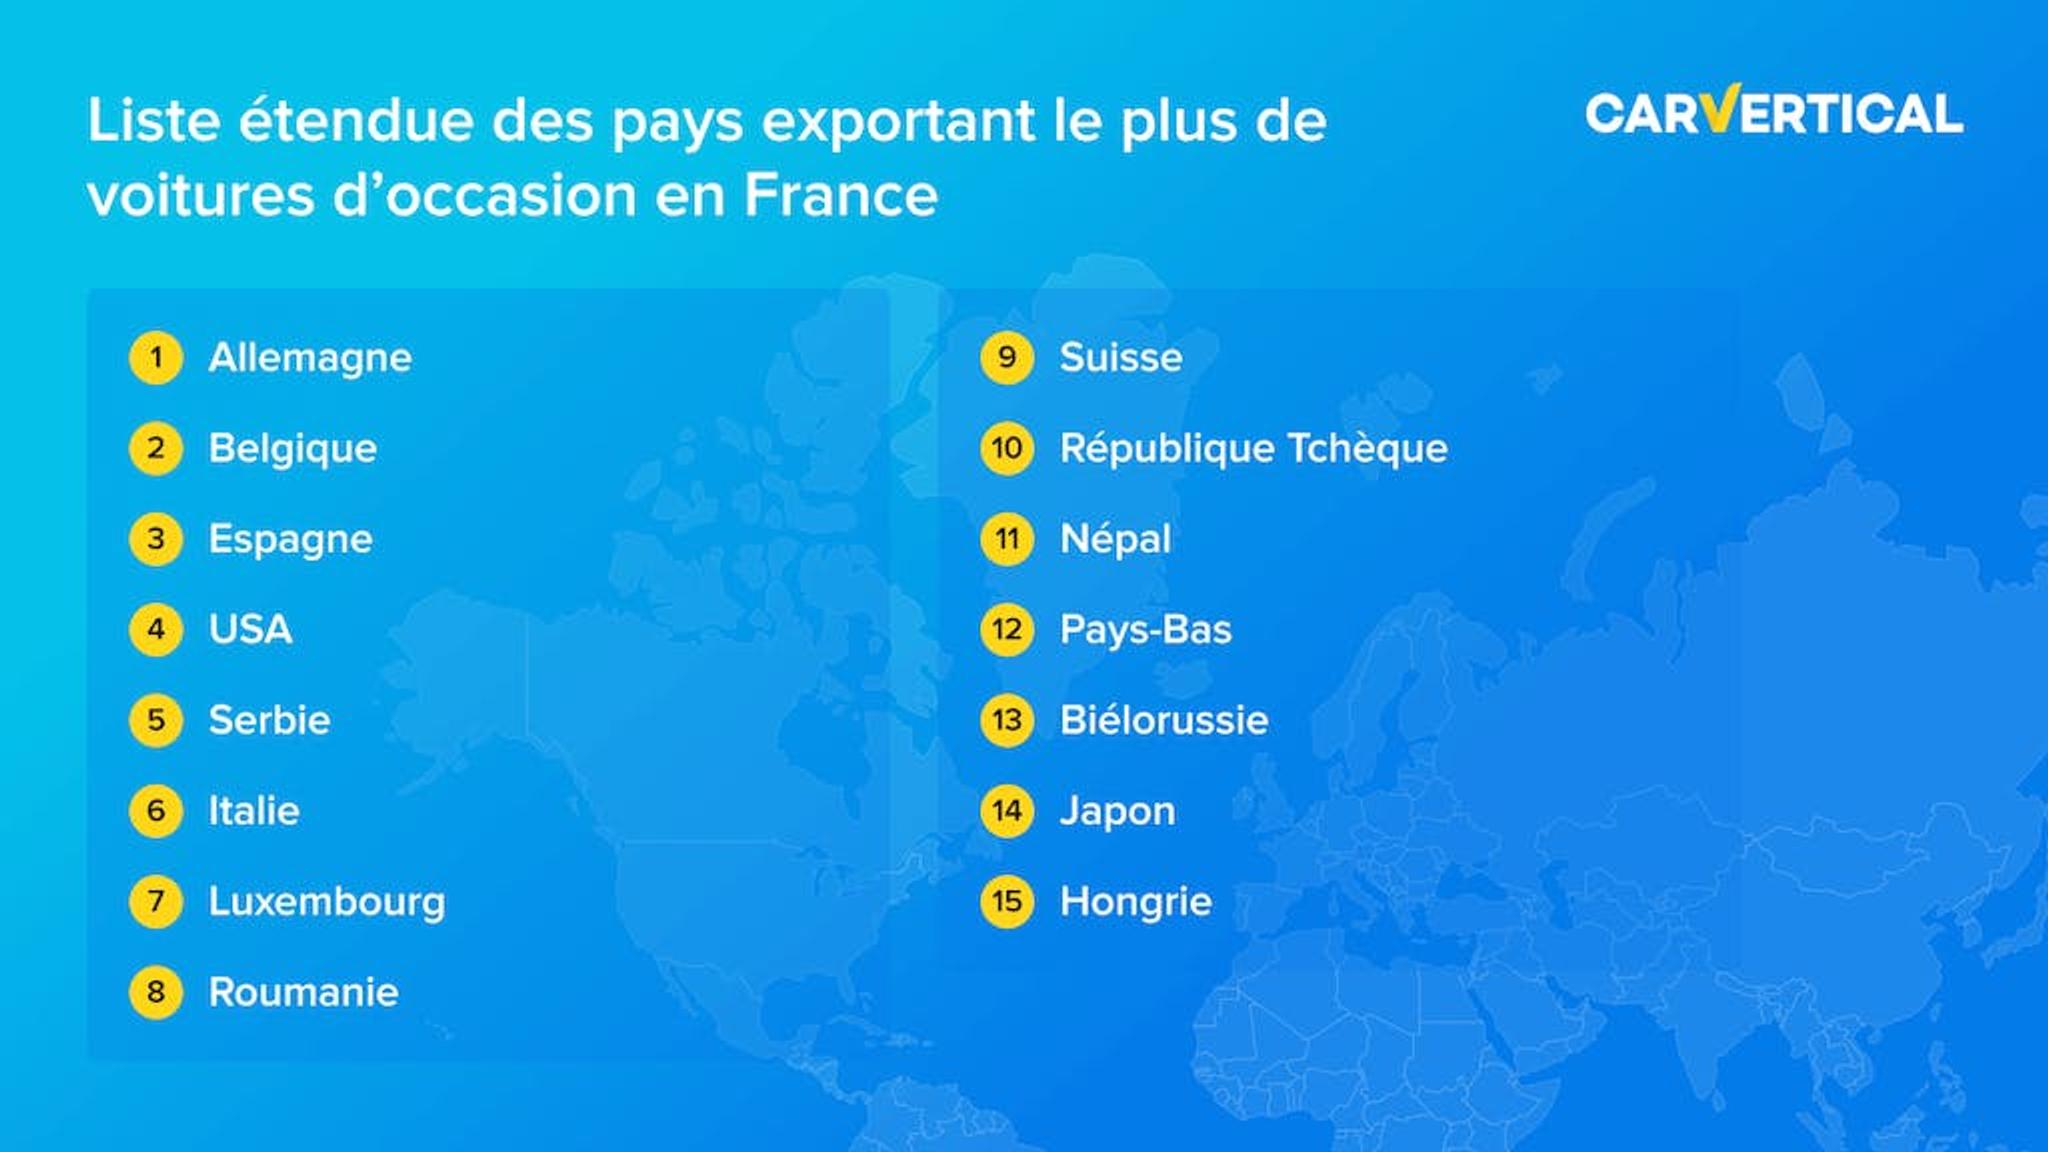 Liste etendue des pays exportant le plus de voitures d'occasion en France